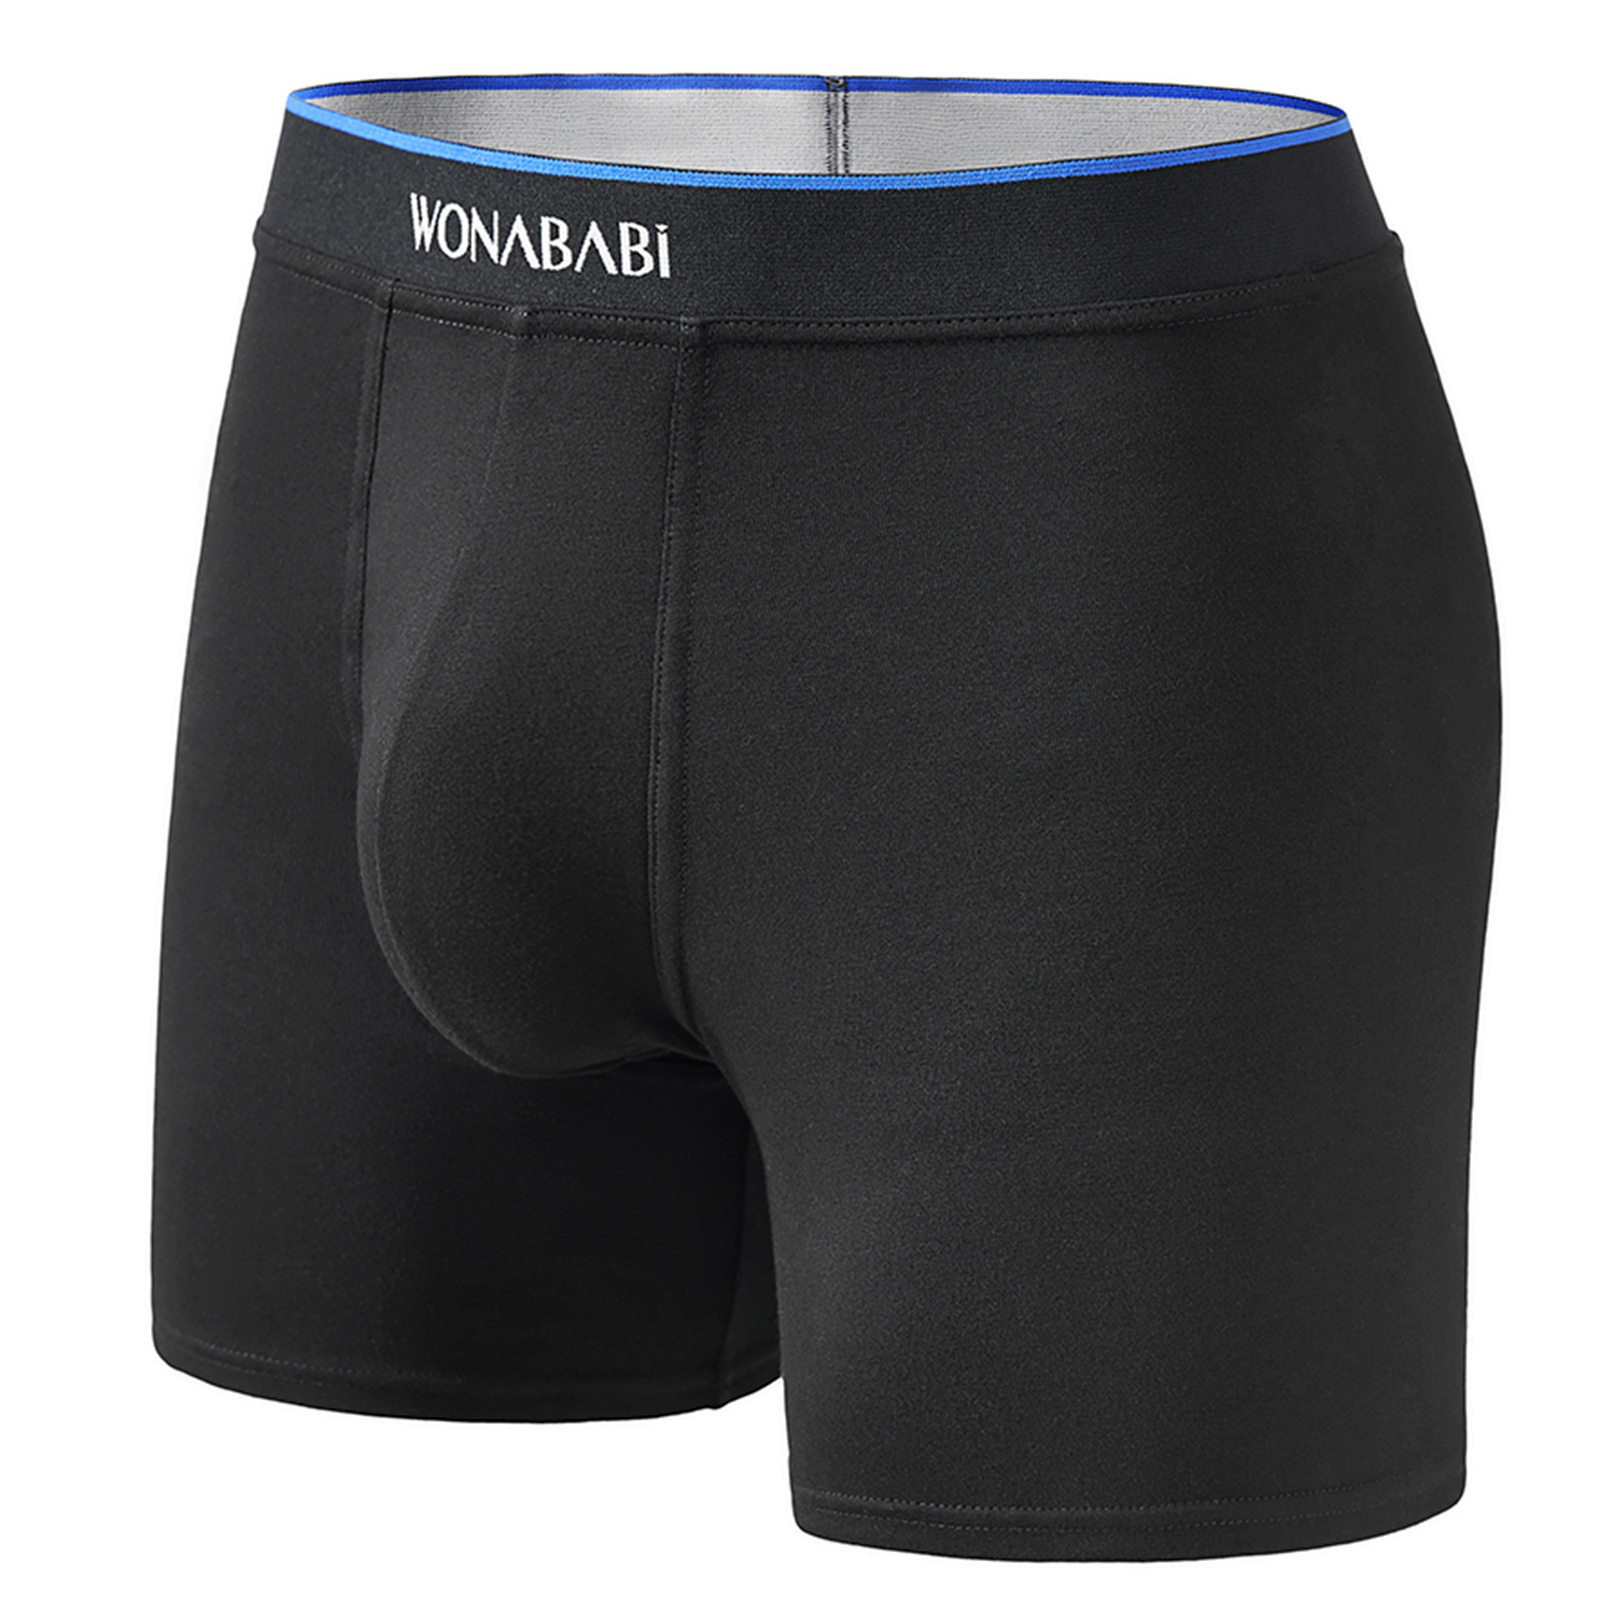 Trans's Underwear Comfy Cotton Boxer Briefs , 019 B-Wonababi